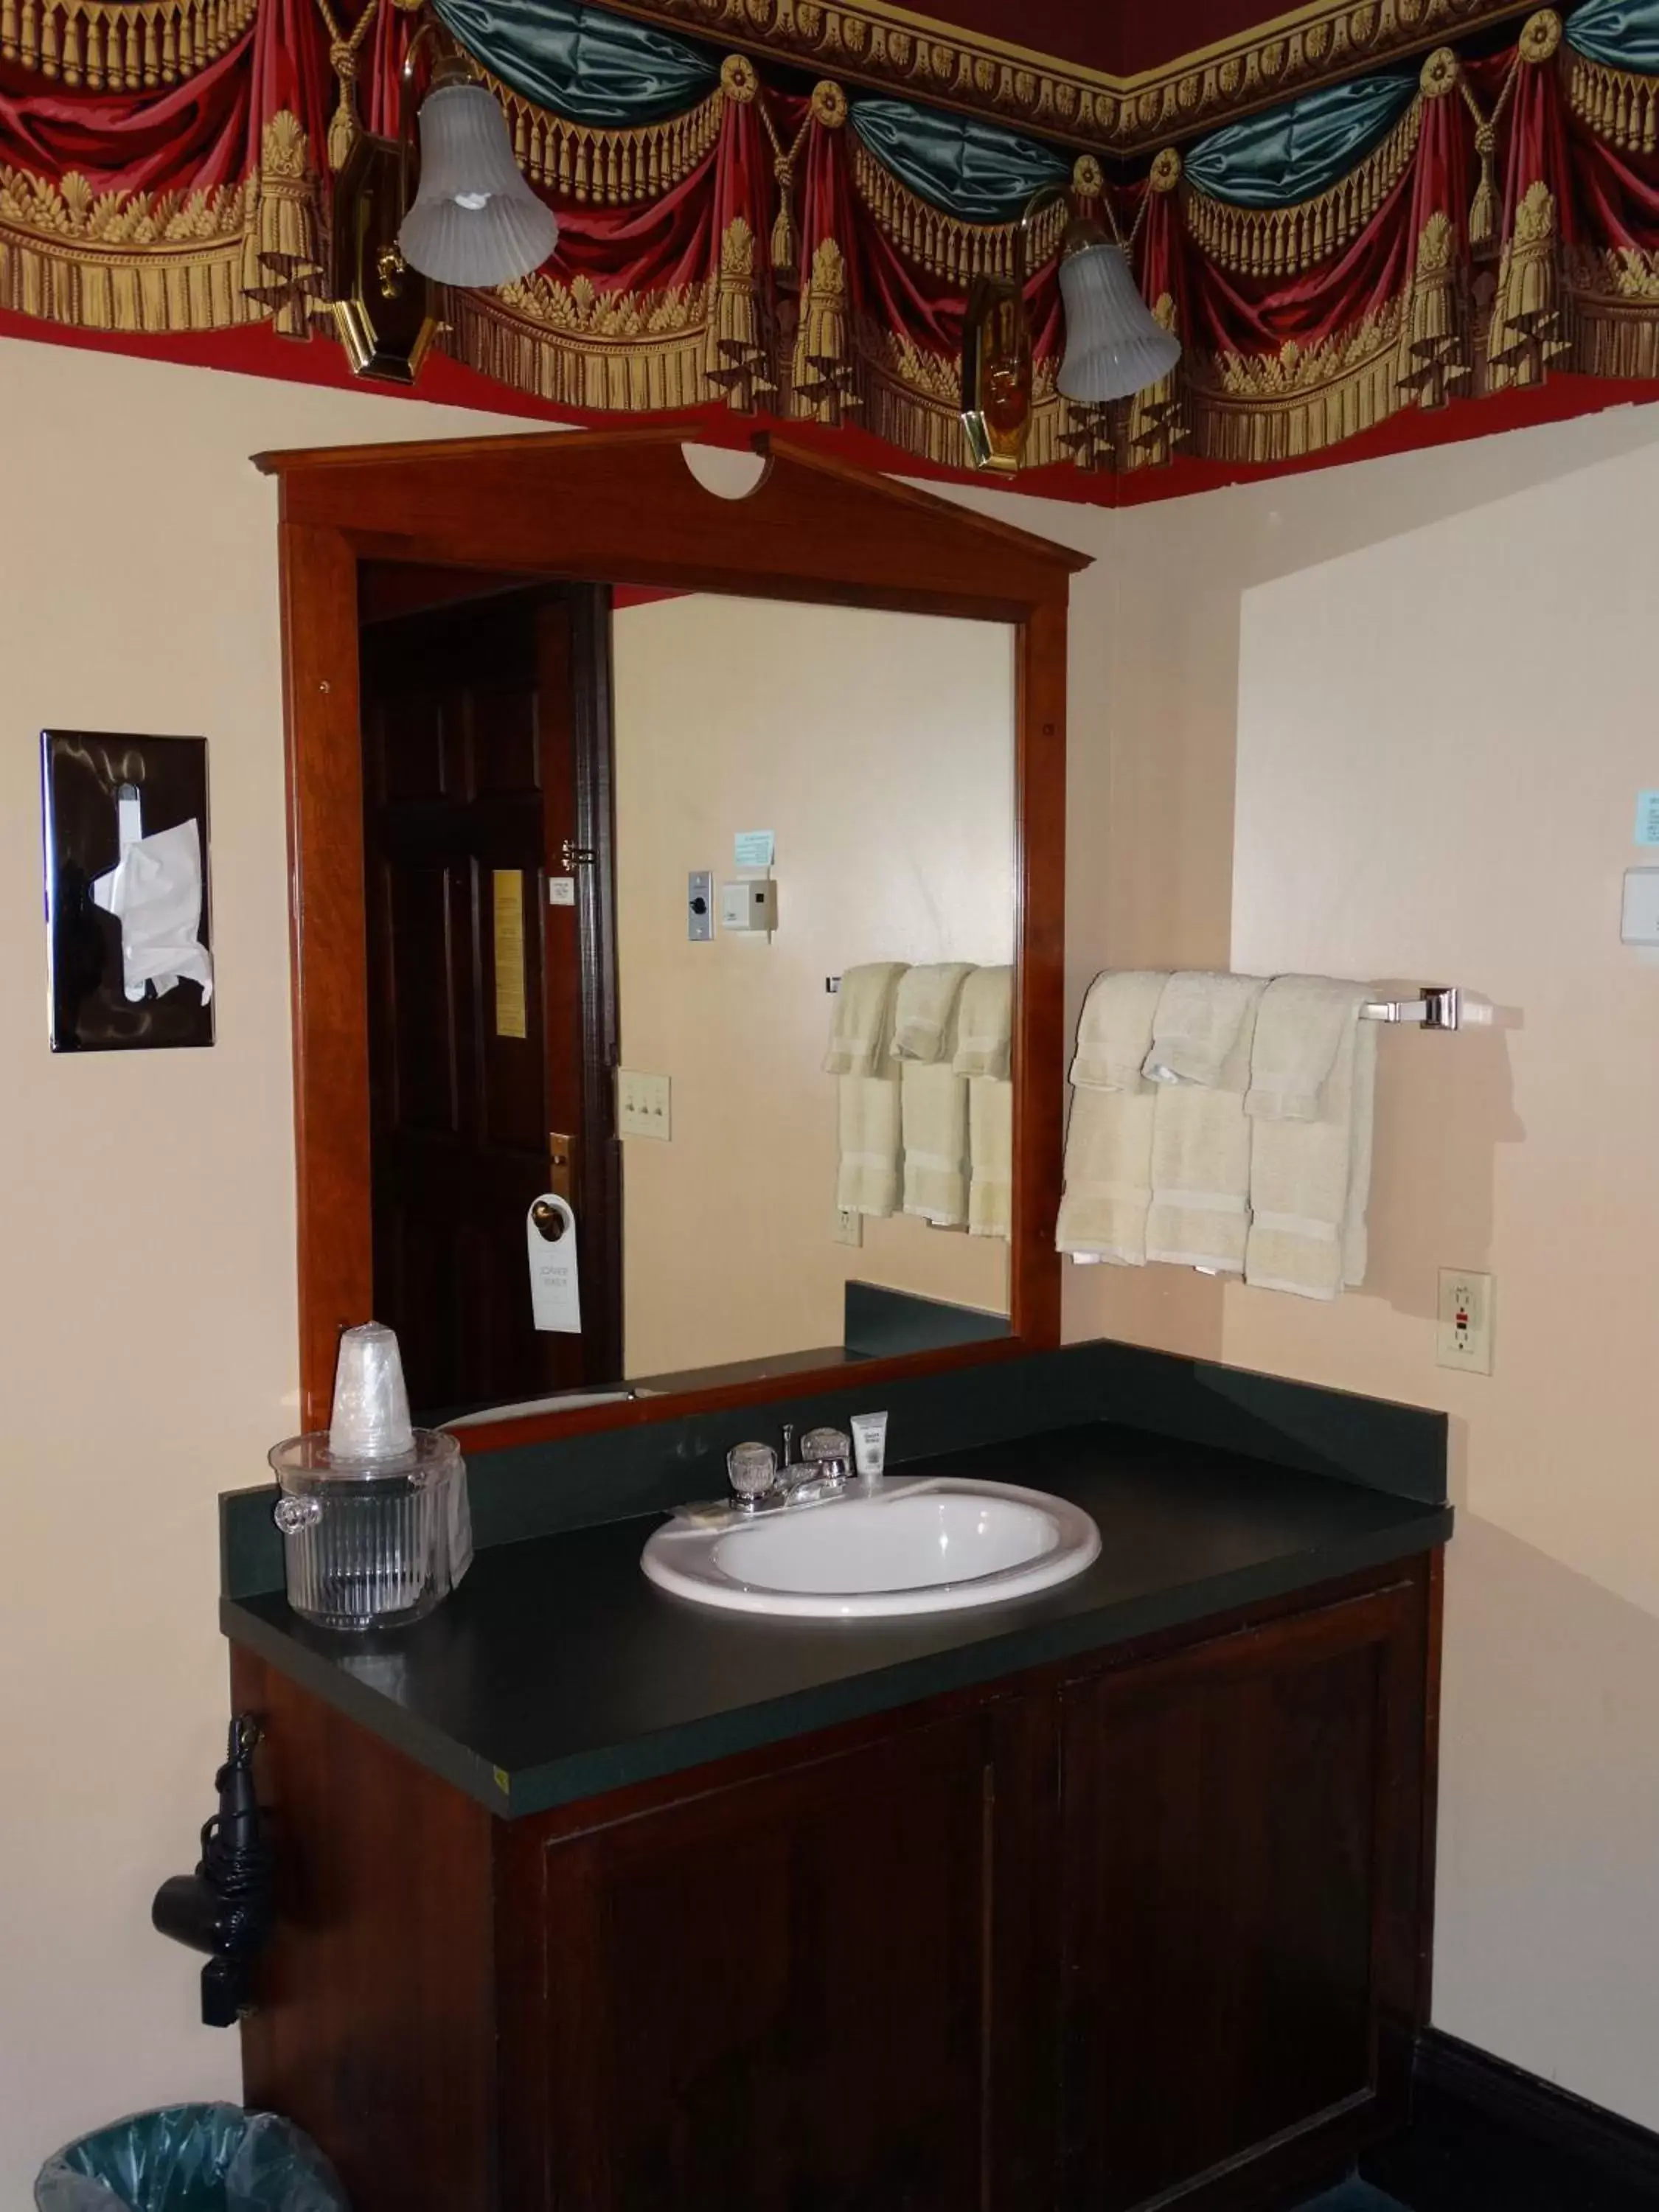 Bathroom in Historic Iron Horse Inn - Deadwood